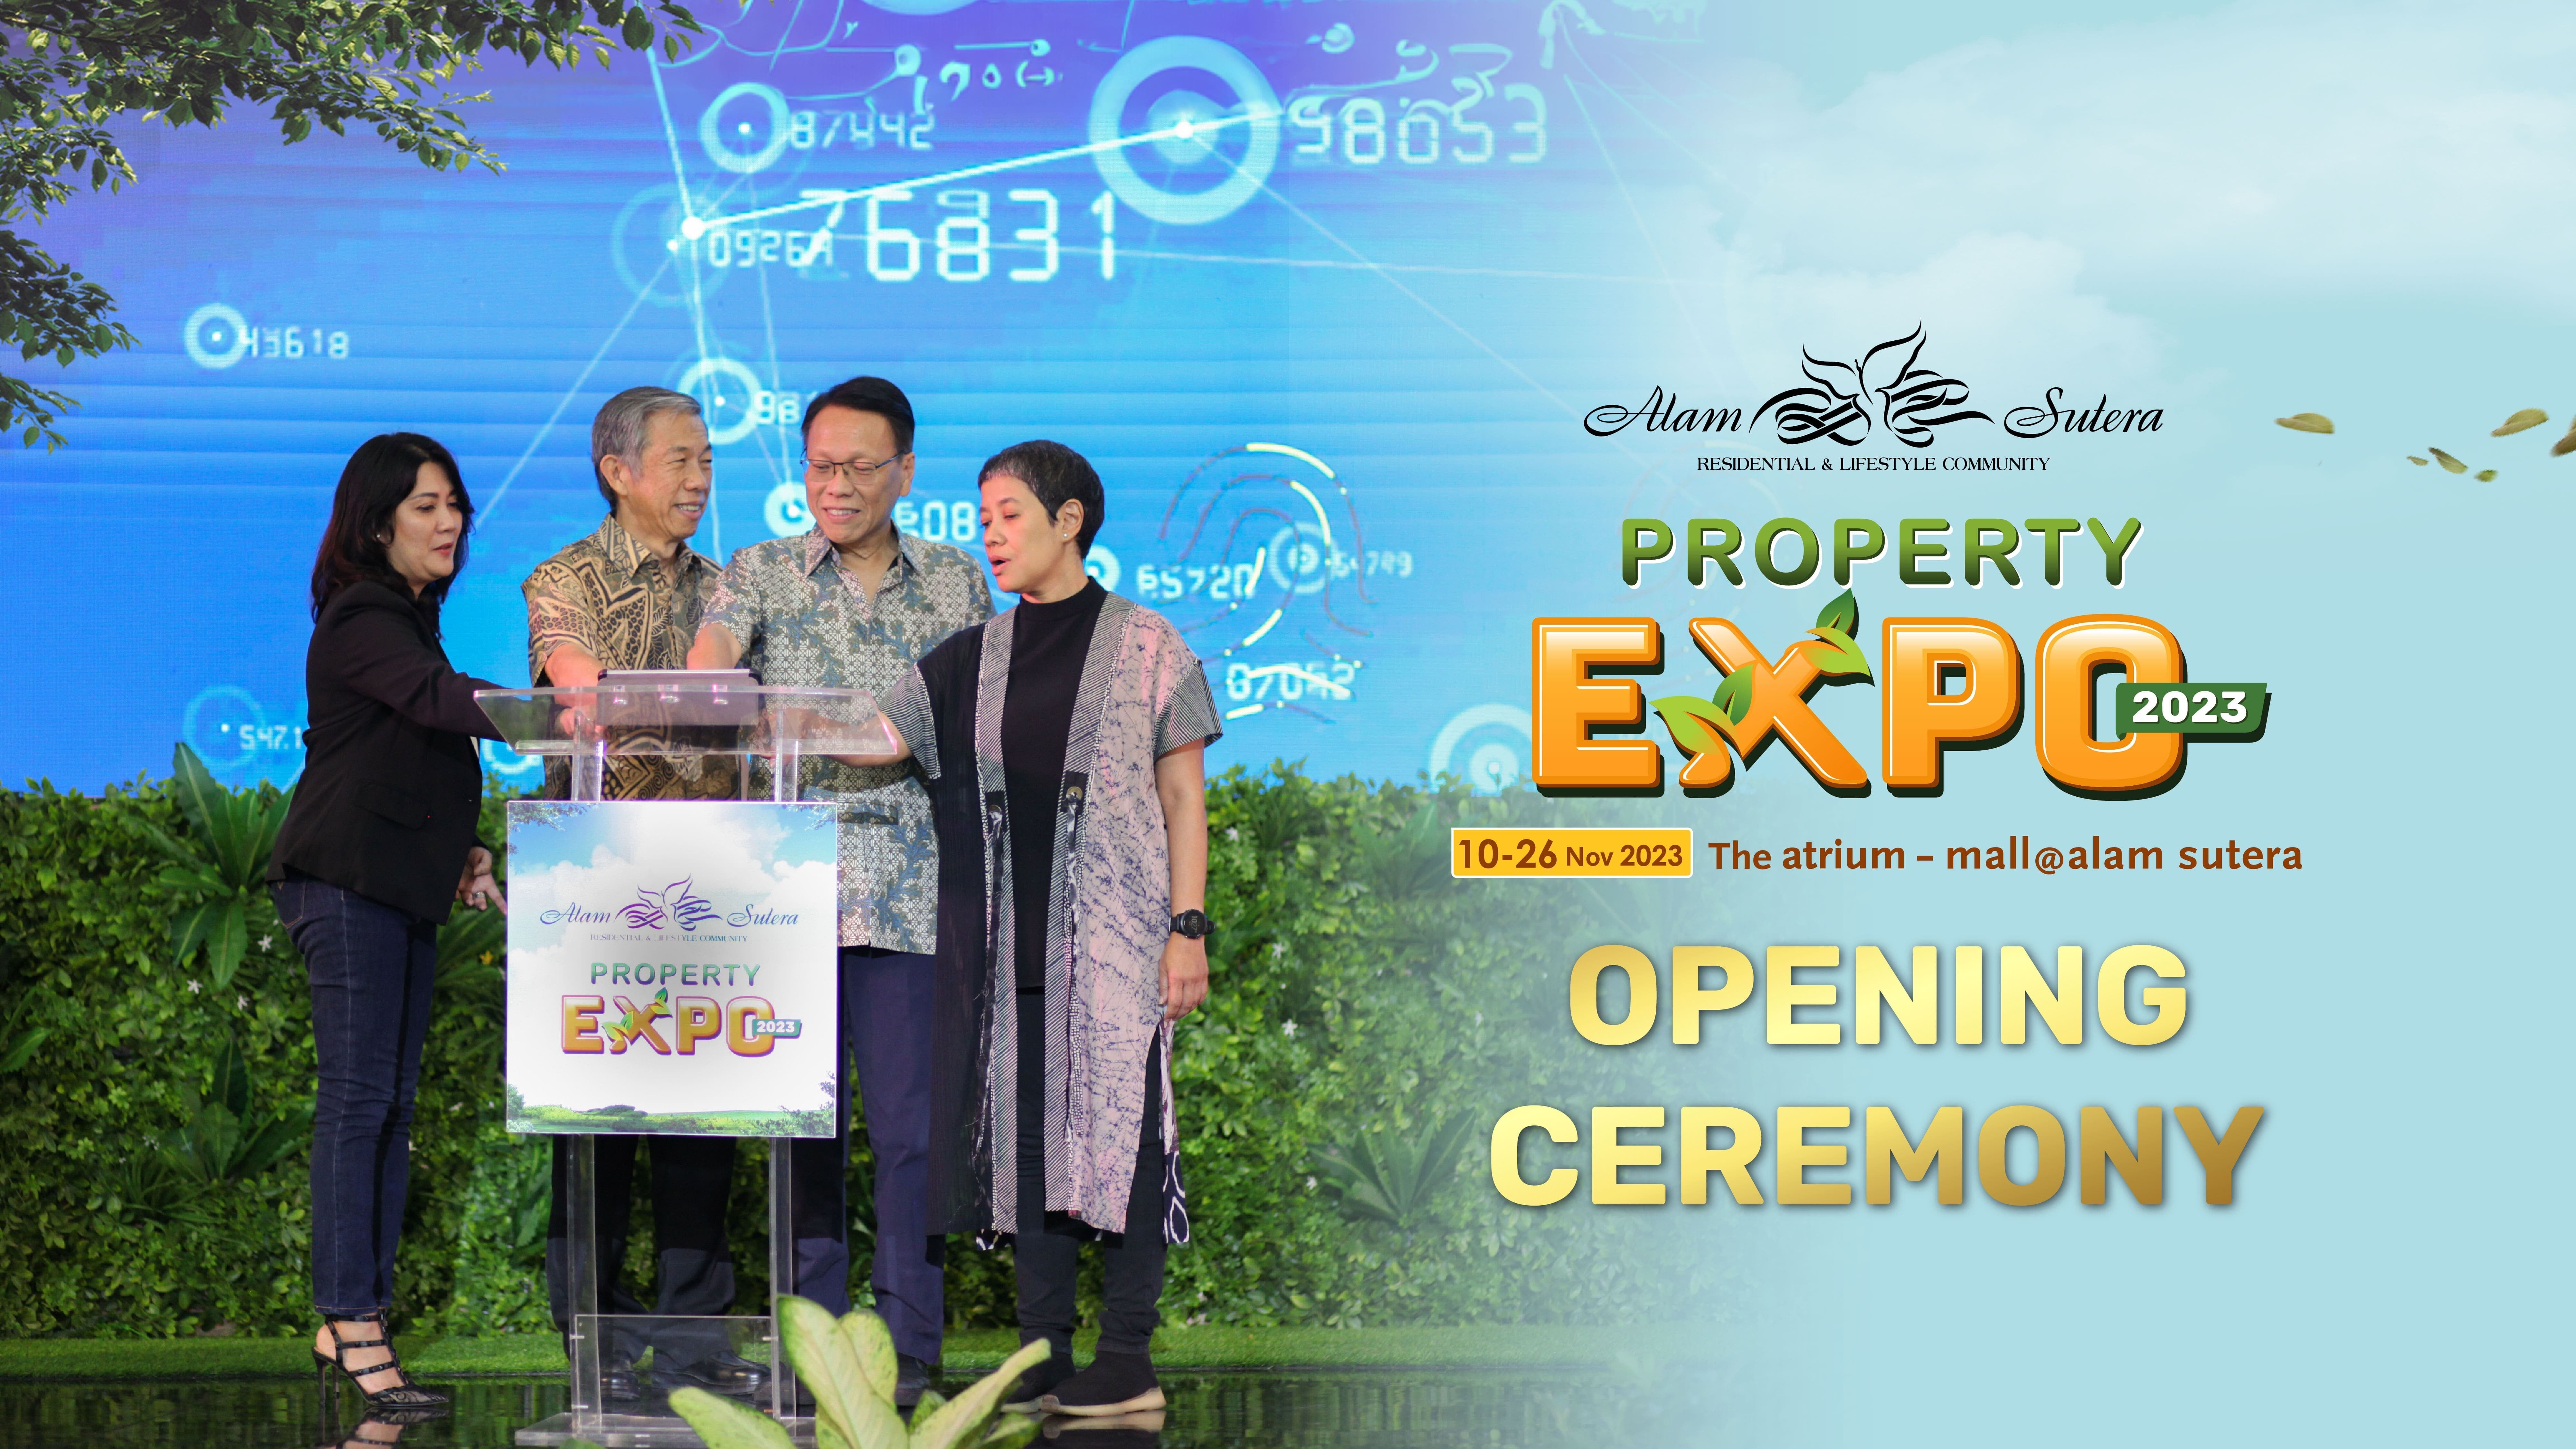 Keseruan Alam Sutera Property Expo 2023